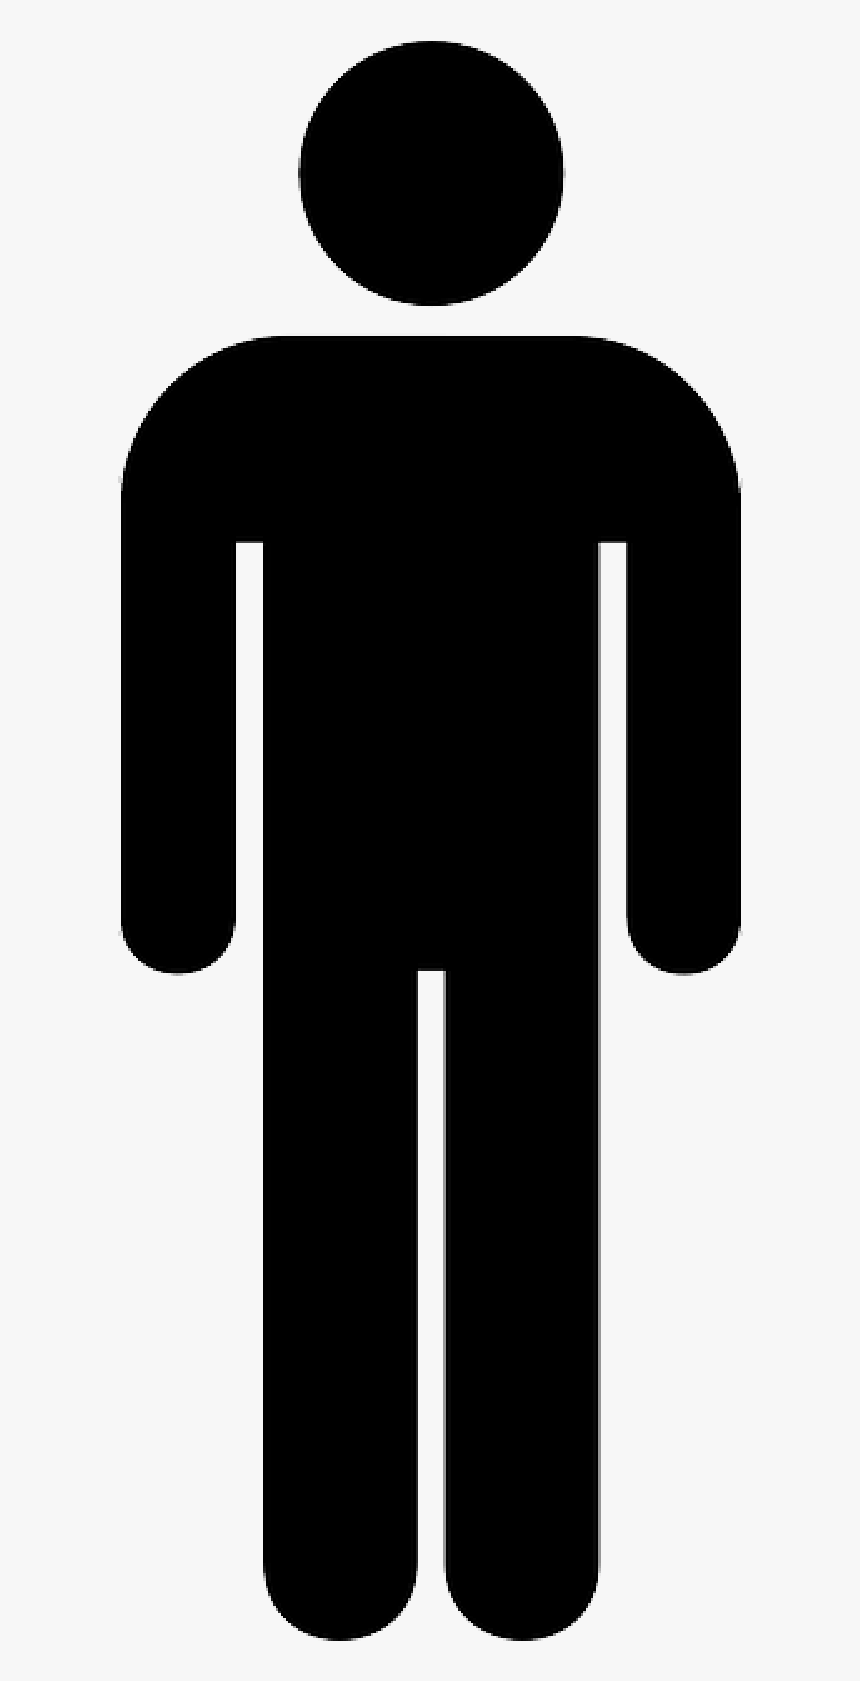 Sign, Silhouette, Male, Toilet, Public, Bathroom Public, - Men Toilet Sign Png, Transparent Png, Free Download